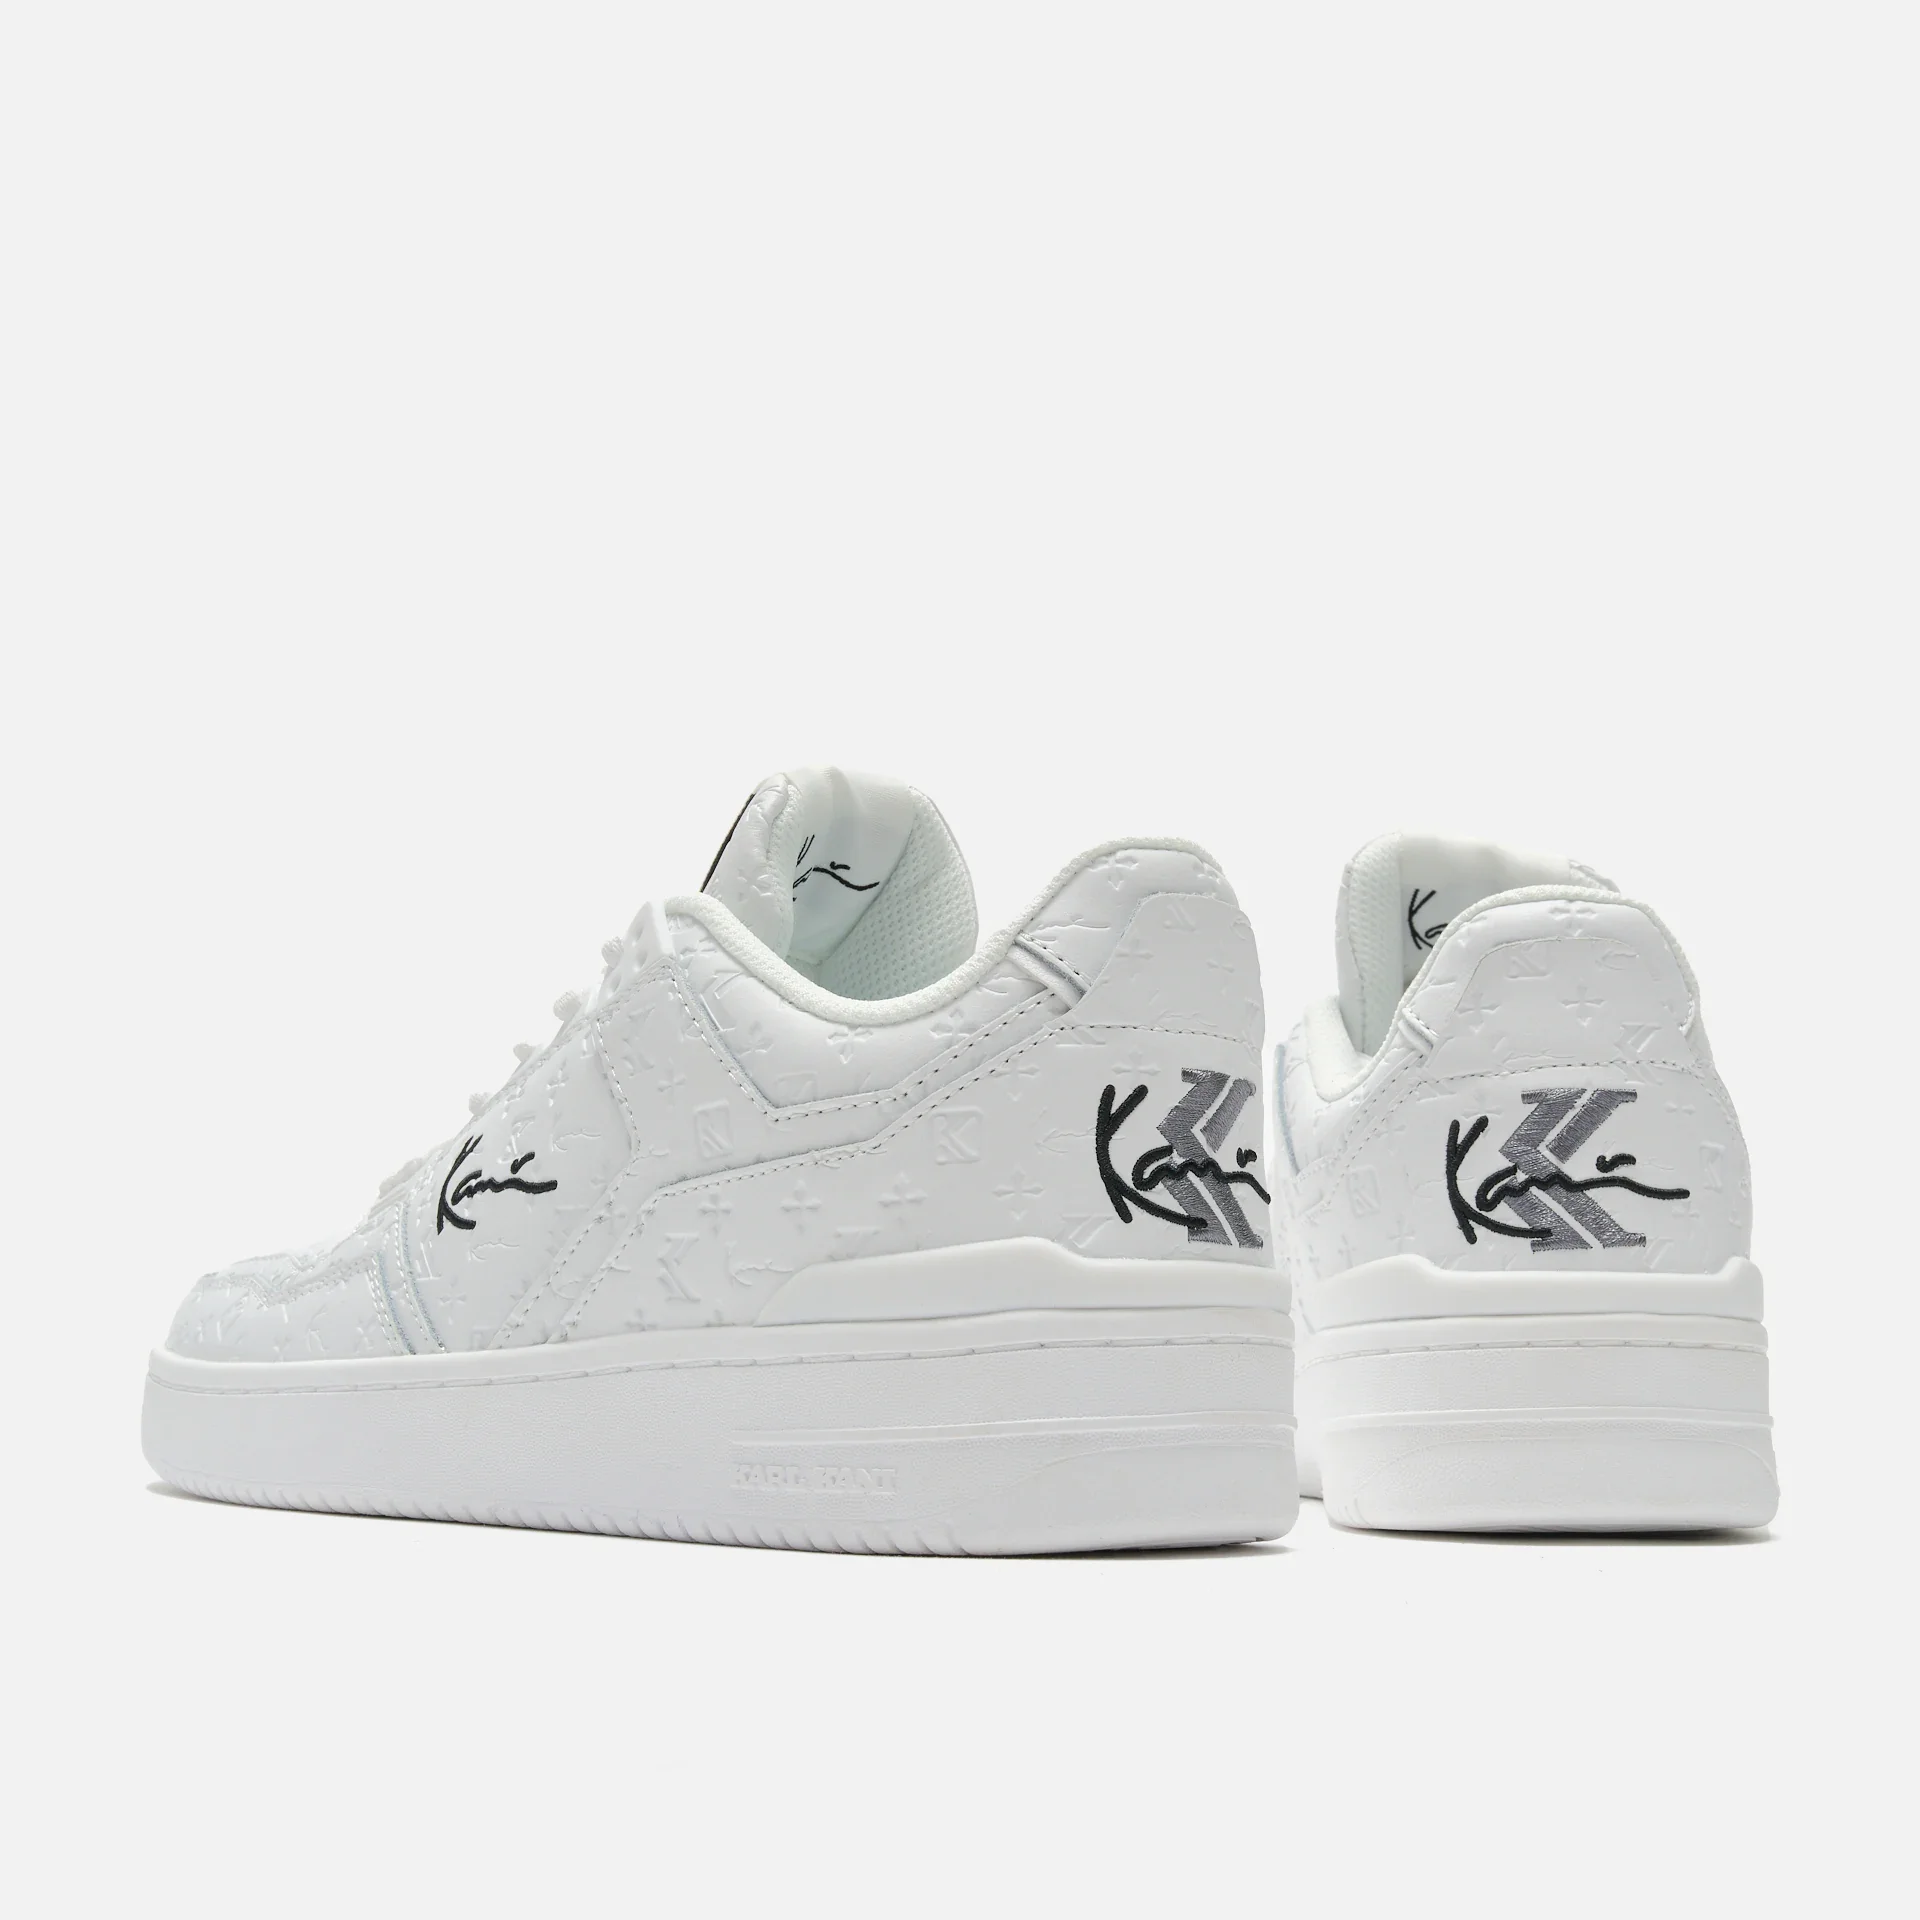 Karl Kani 89 LXRY PRM Sneakers White